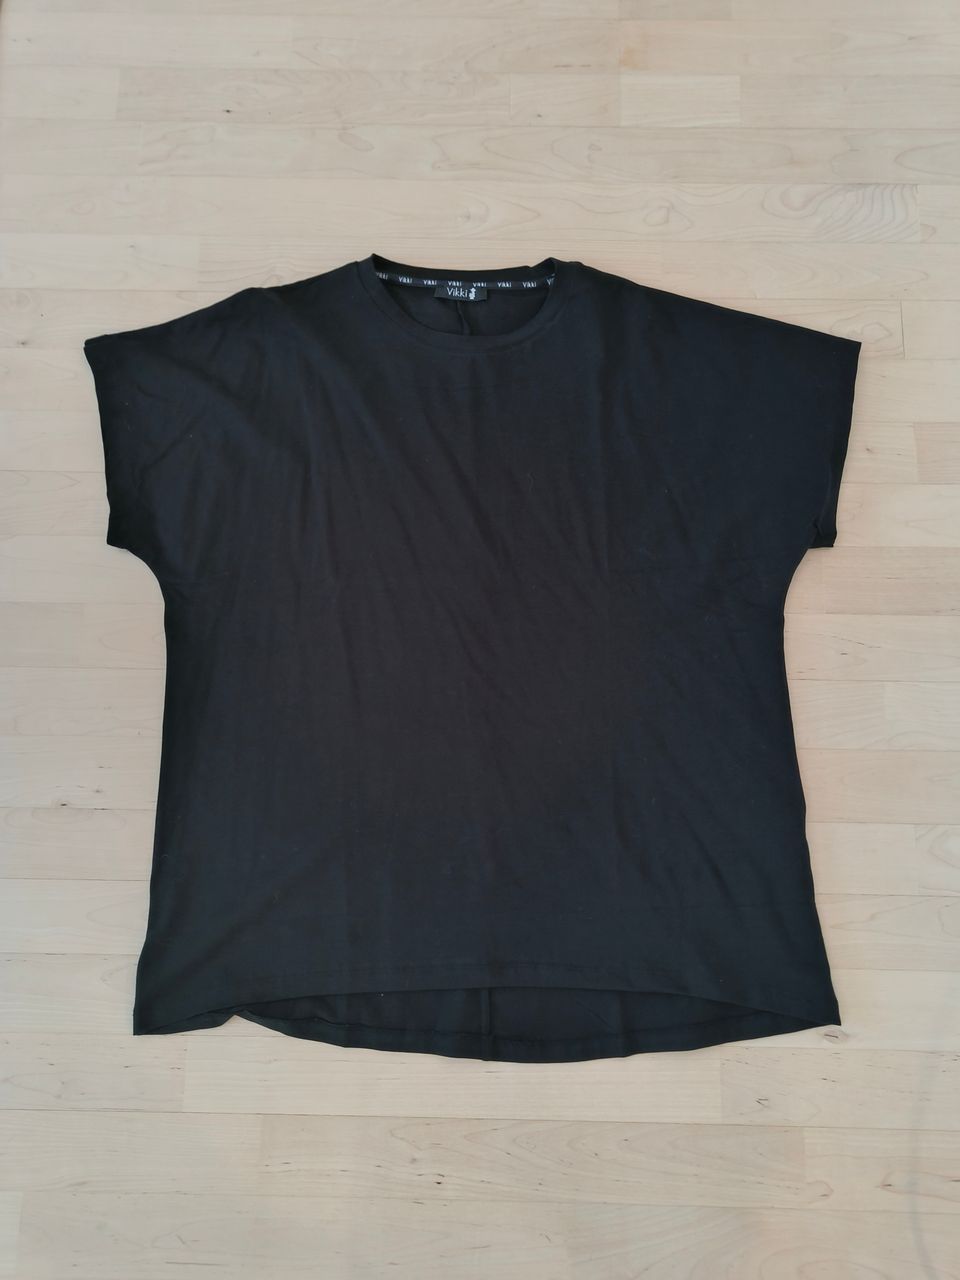 Musta t-paita kokoa 46